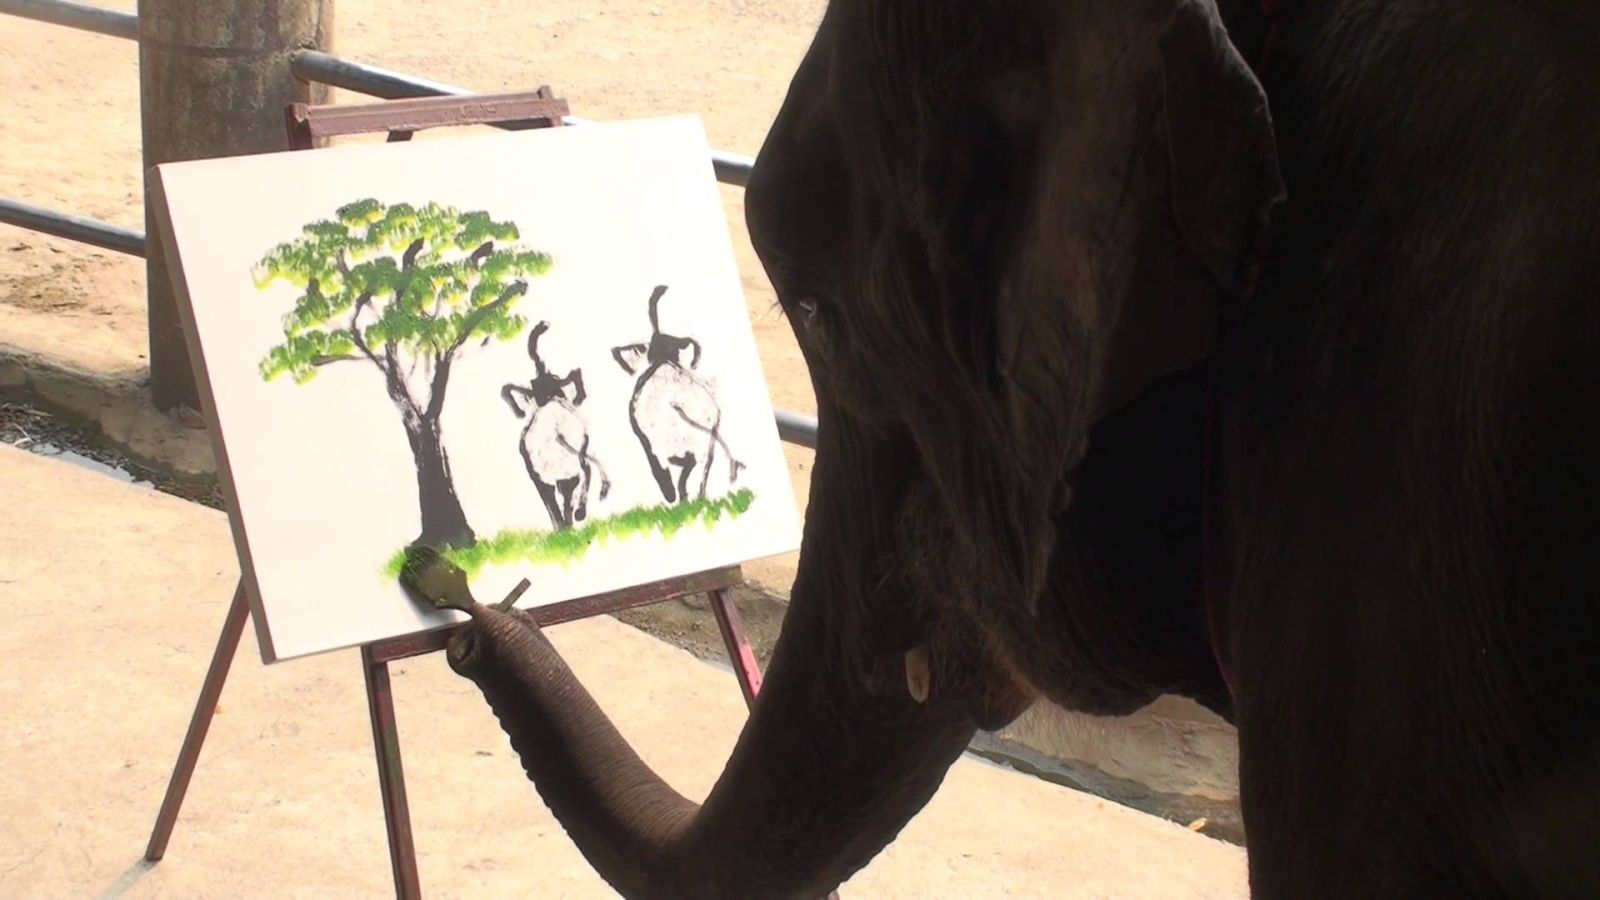 Sloni mají určitý rituál, ve kterém uctívají svého druha.